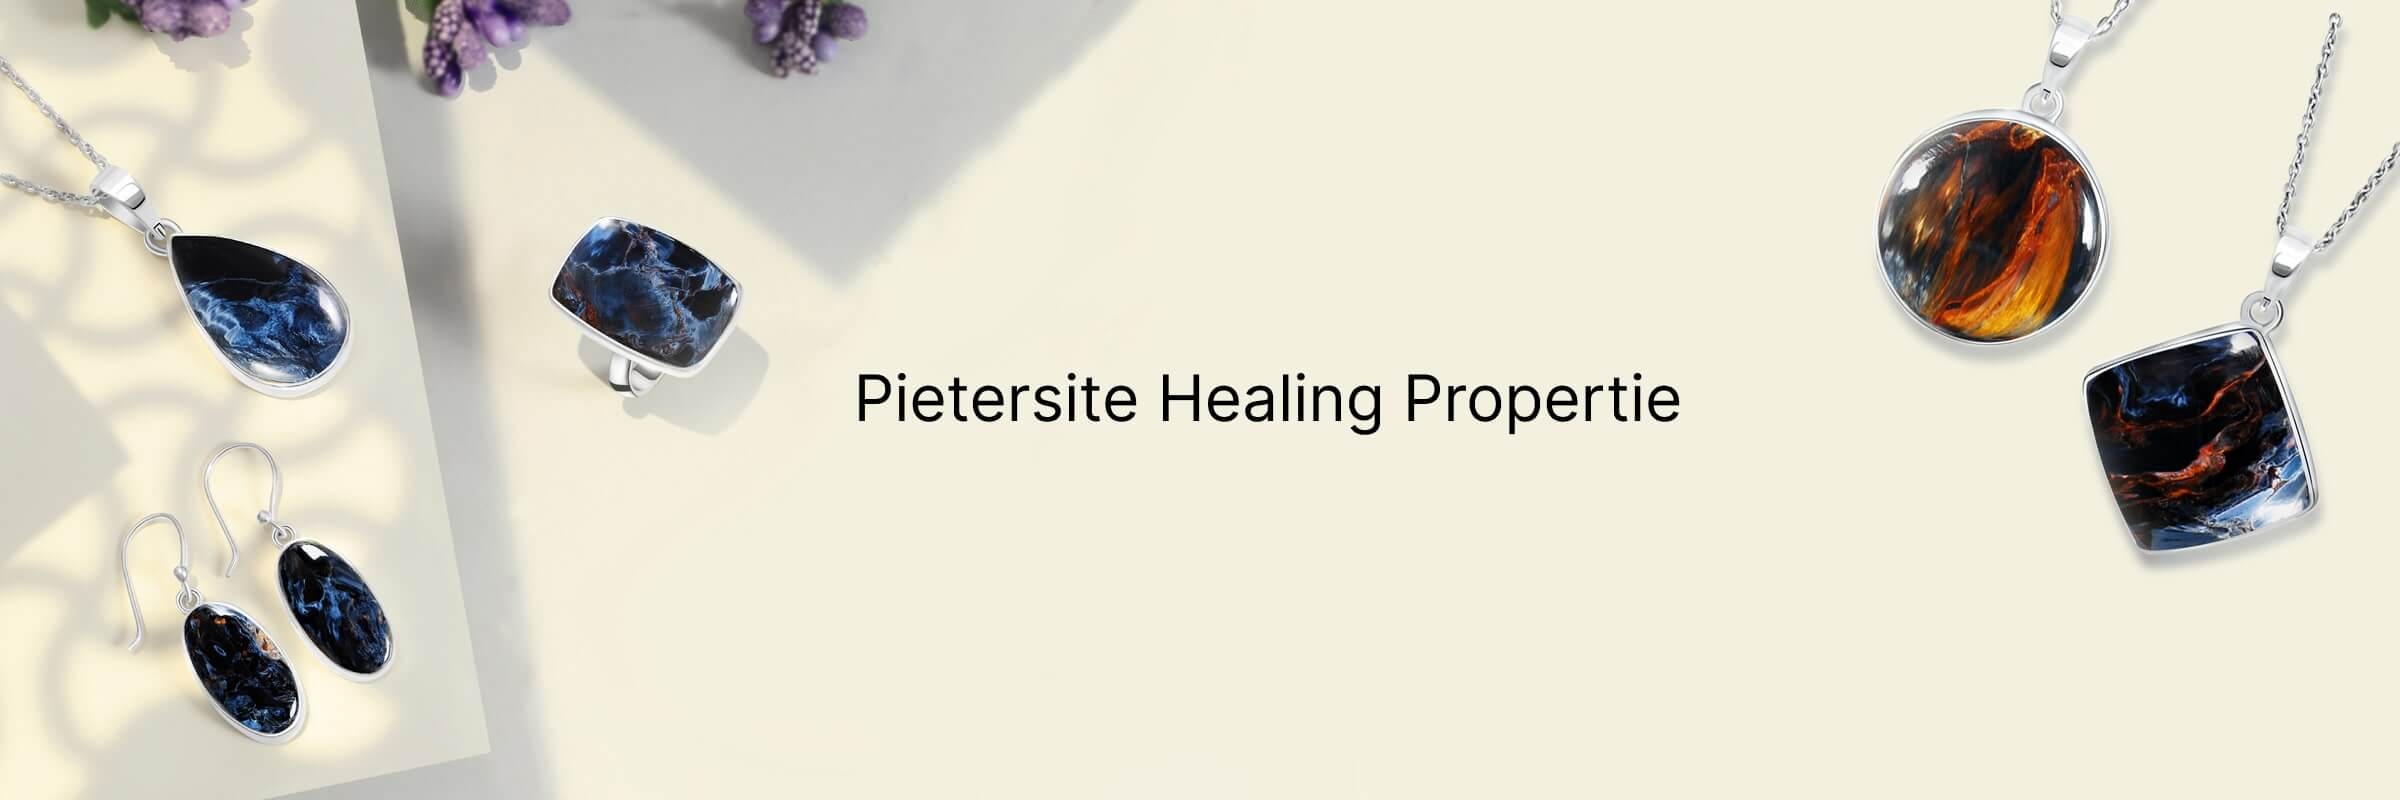 Healing properties of Pietersite